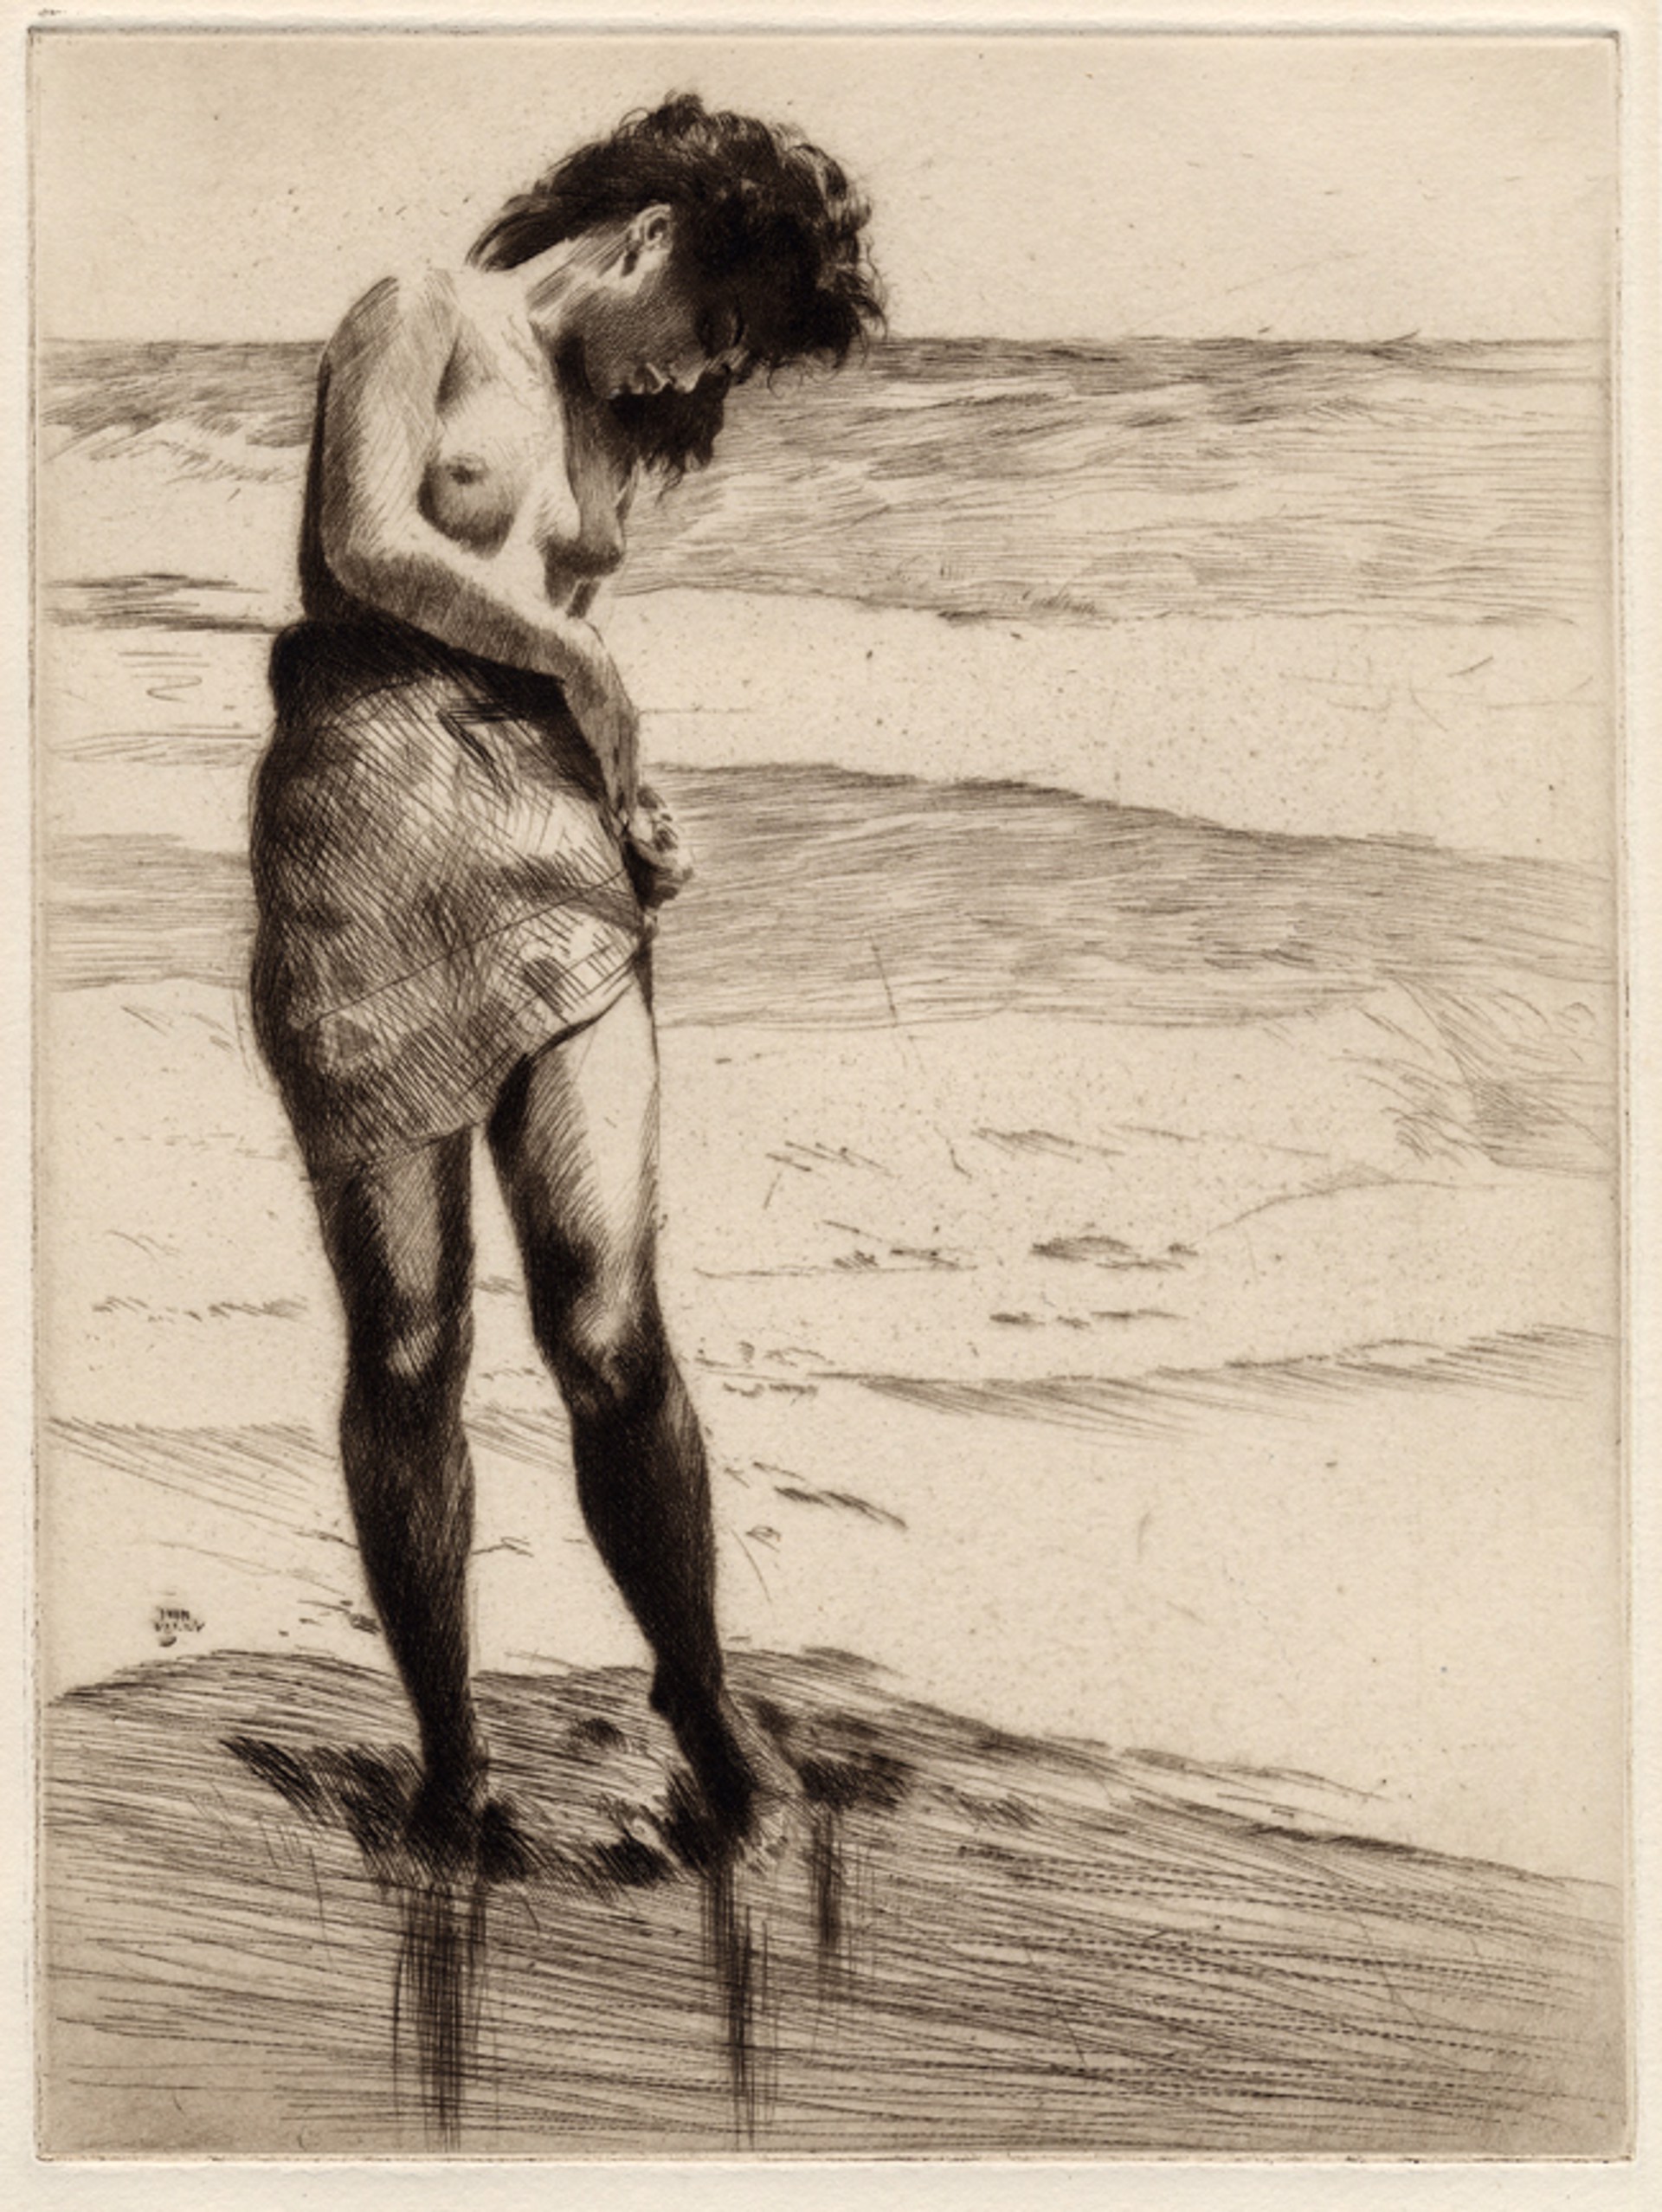 Ewalani at the Beach by John M. Kelly